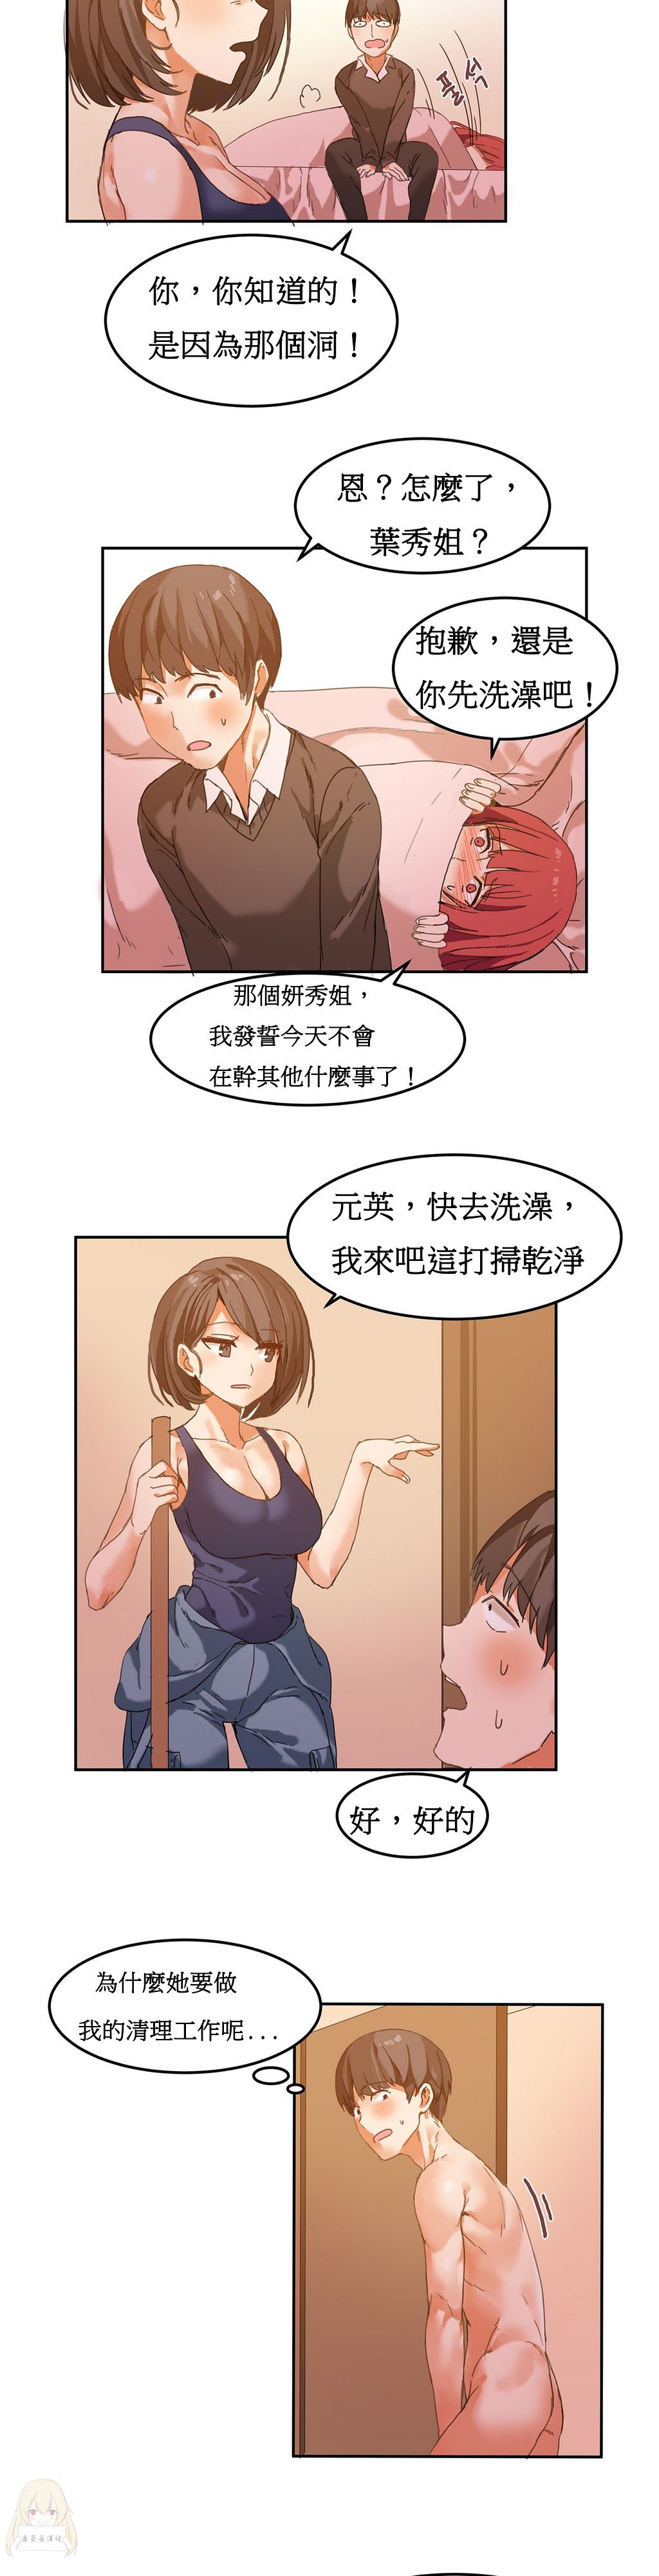 韩国污漫画 寄宿公寓-陰氣之洞 第5话 12